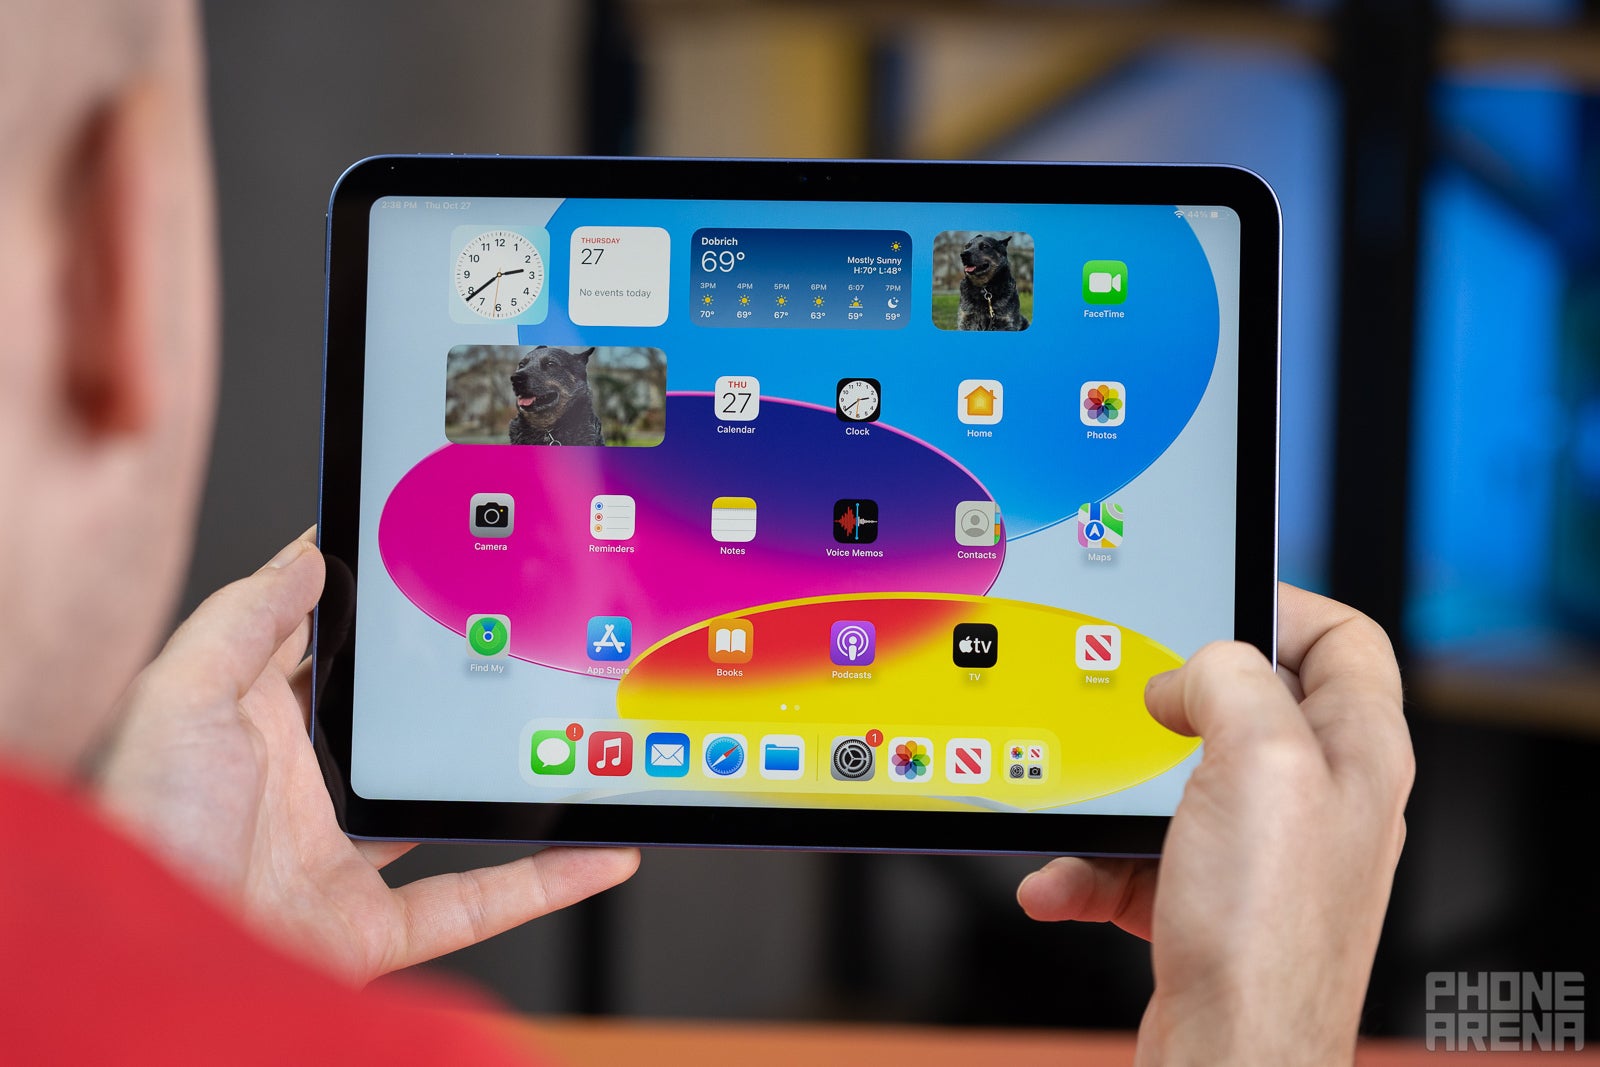 Google Pixel Tablet vs. Apple iPad: A spec-by-spec comparison